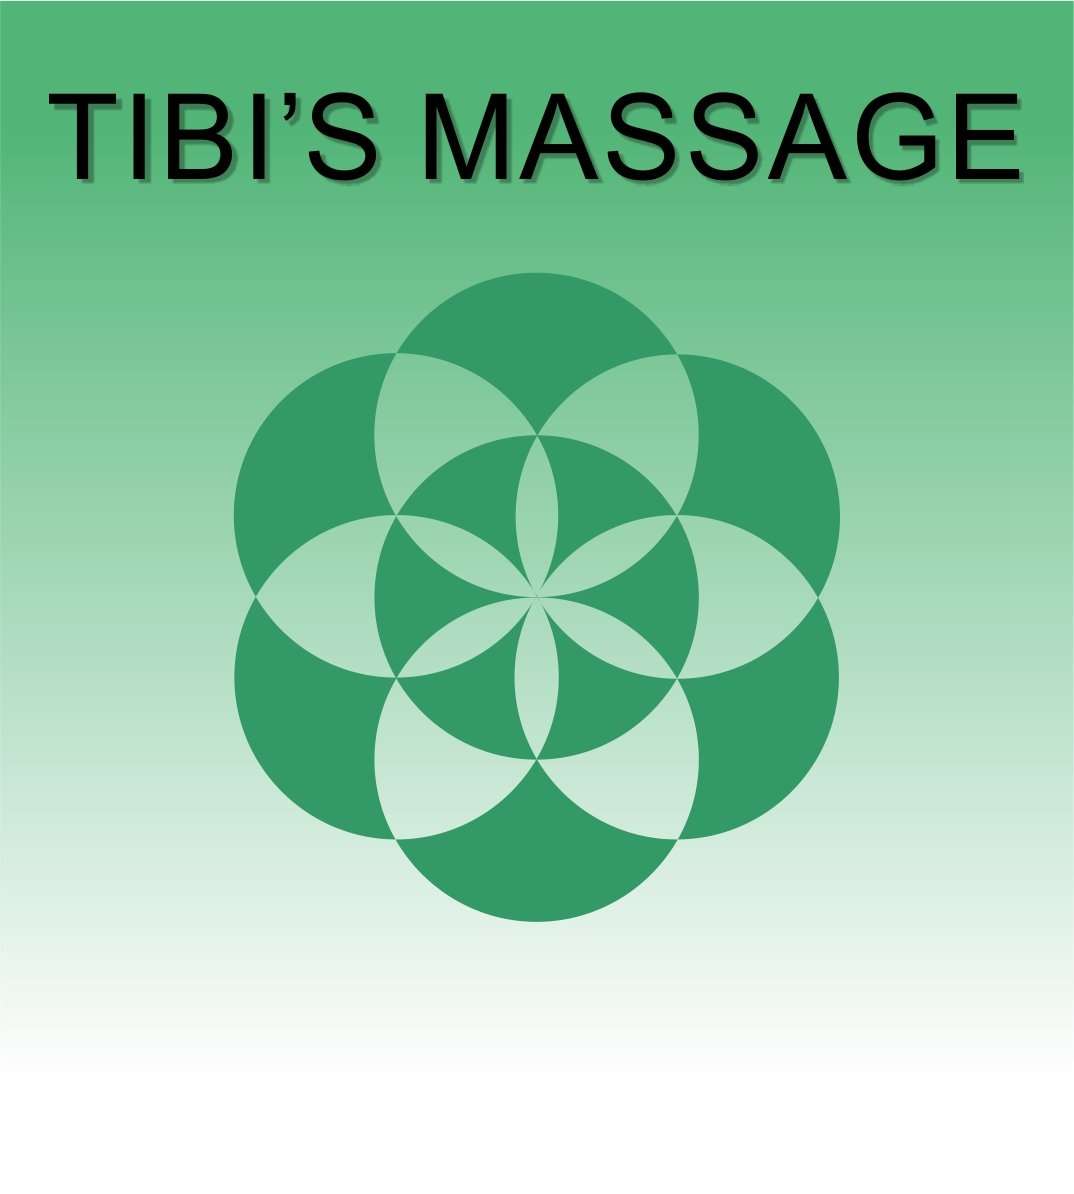 Tibi's massage therapy